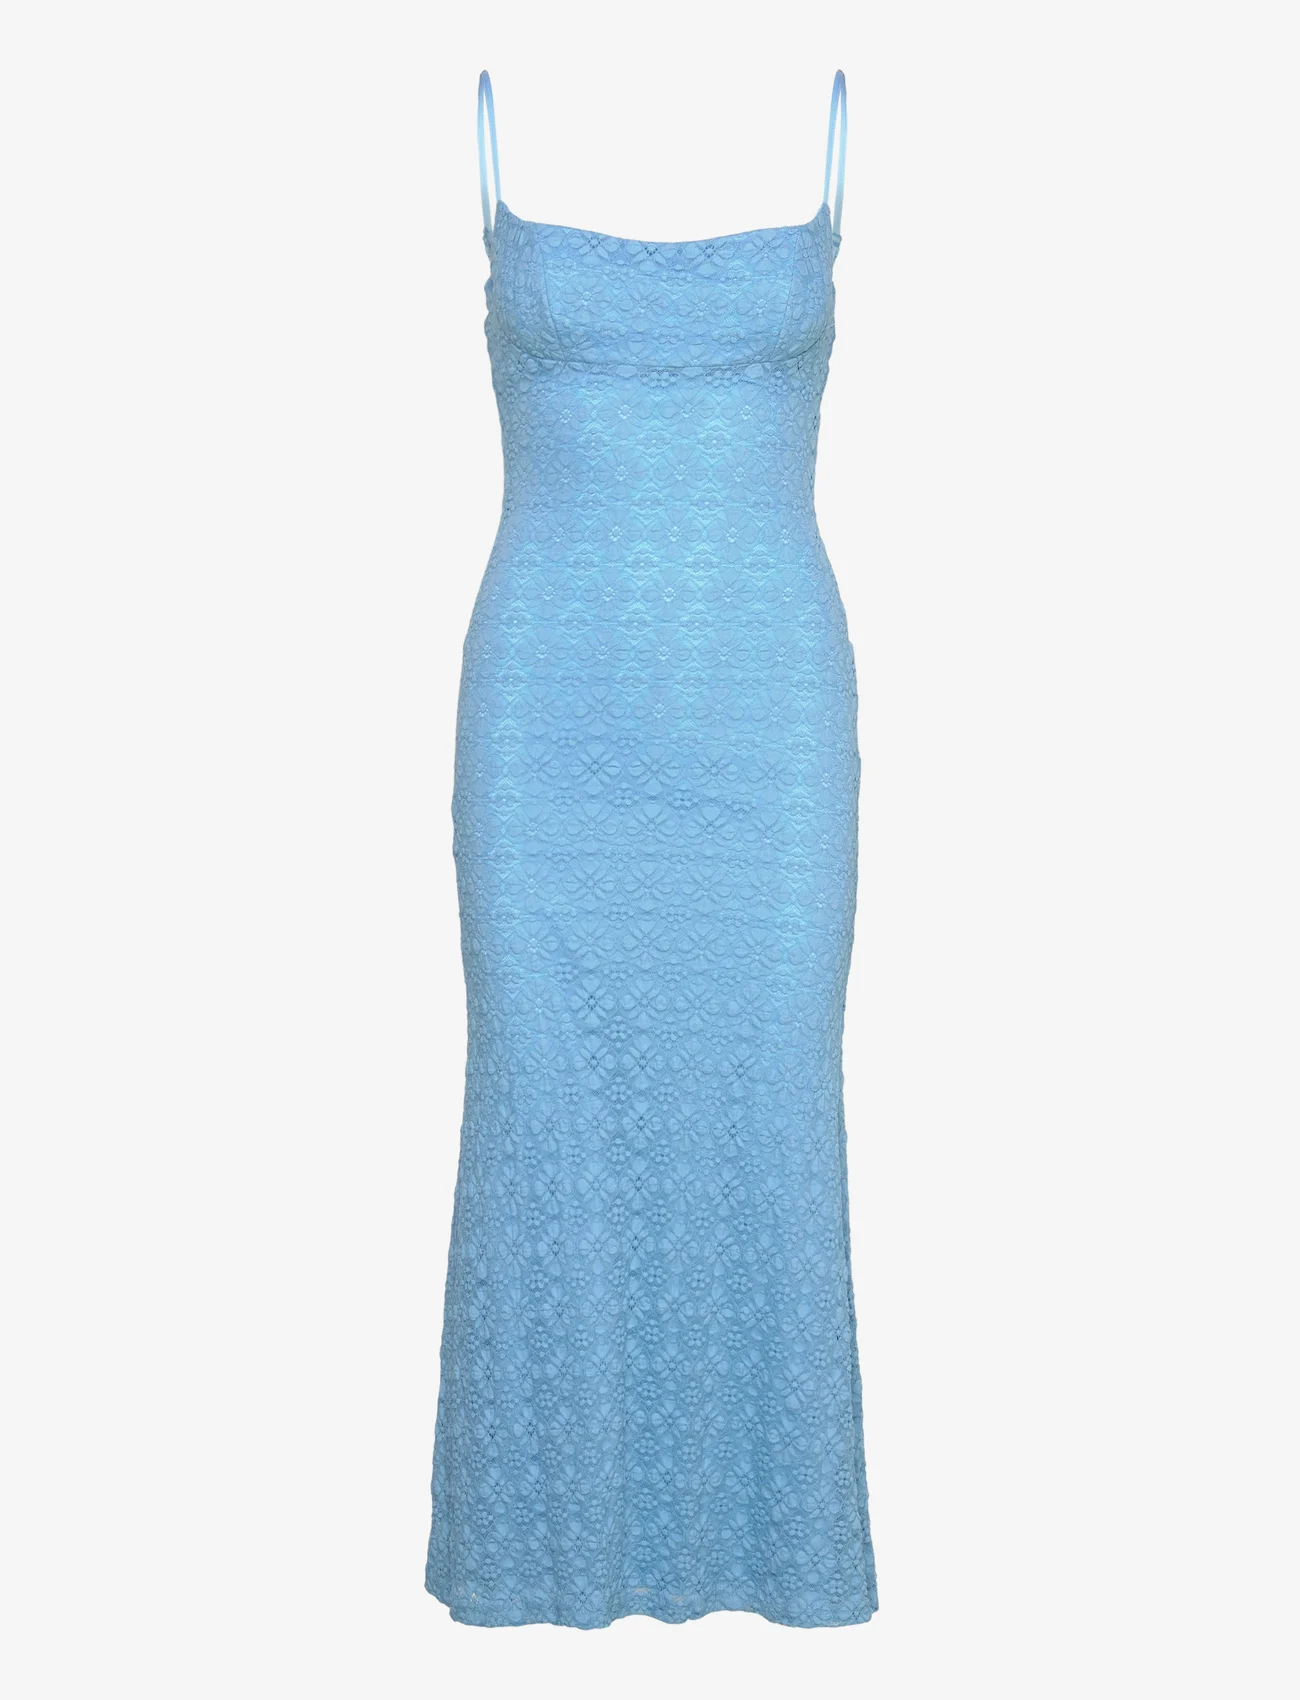 Bardot - ADONI MESH MIDI DRESS - slip dresses - mid blue - 0